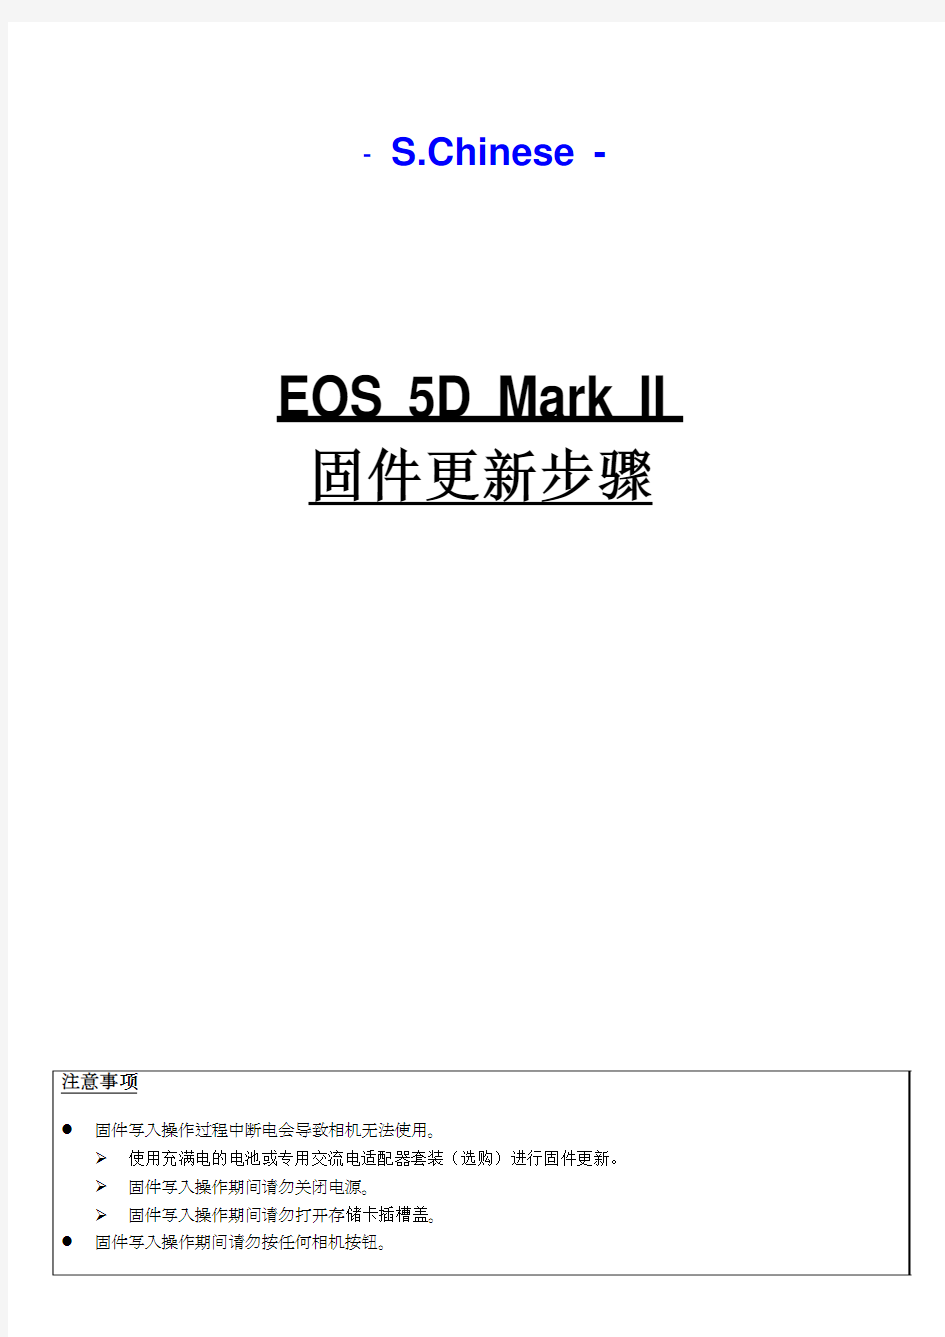 佳能5D2相机固件更新说明书 中文版